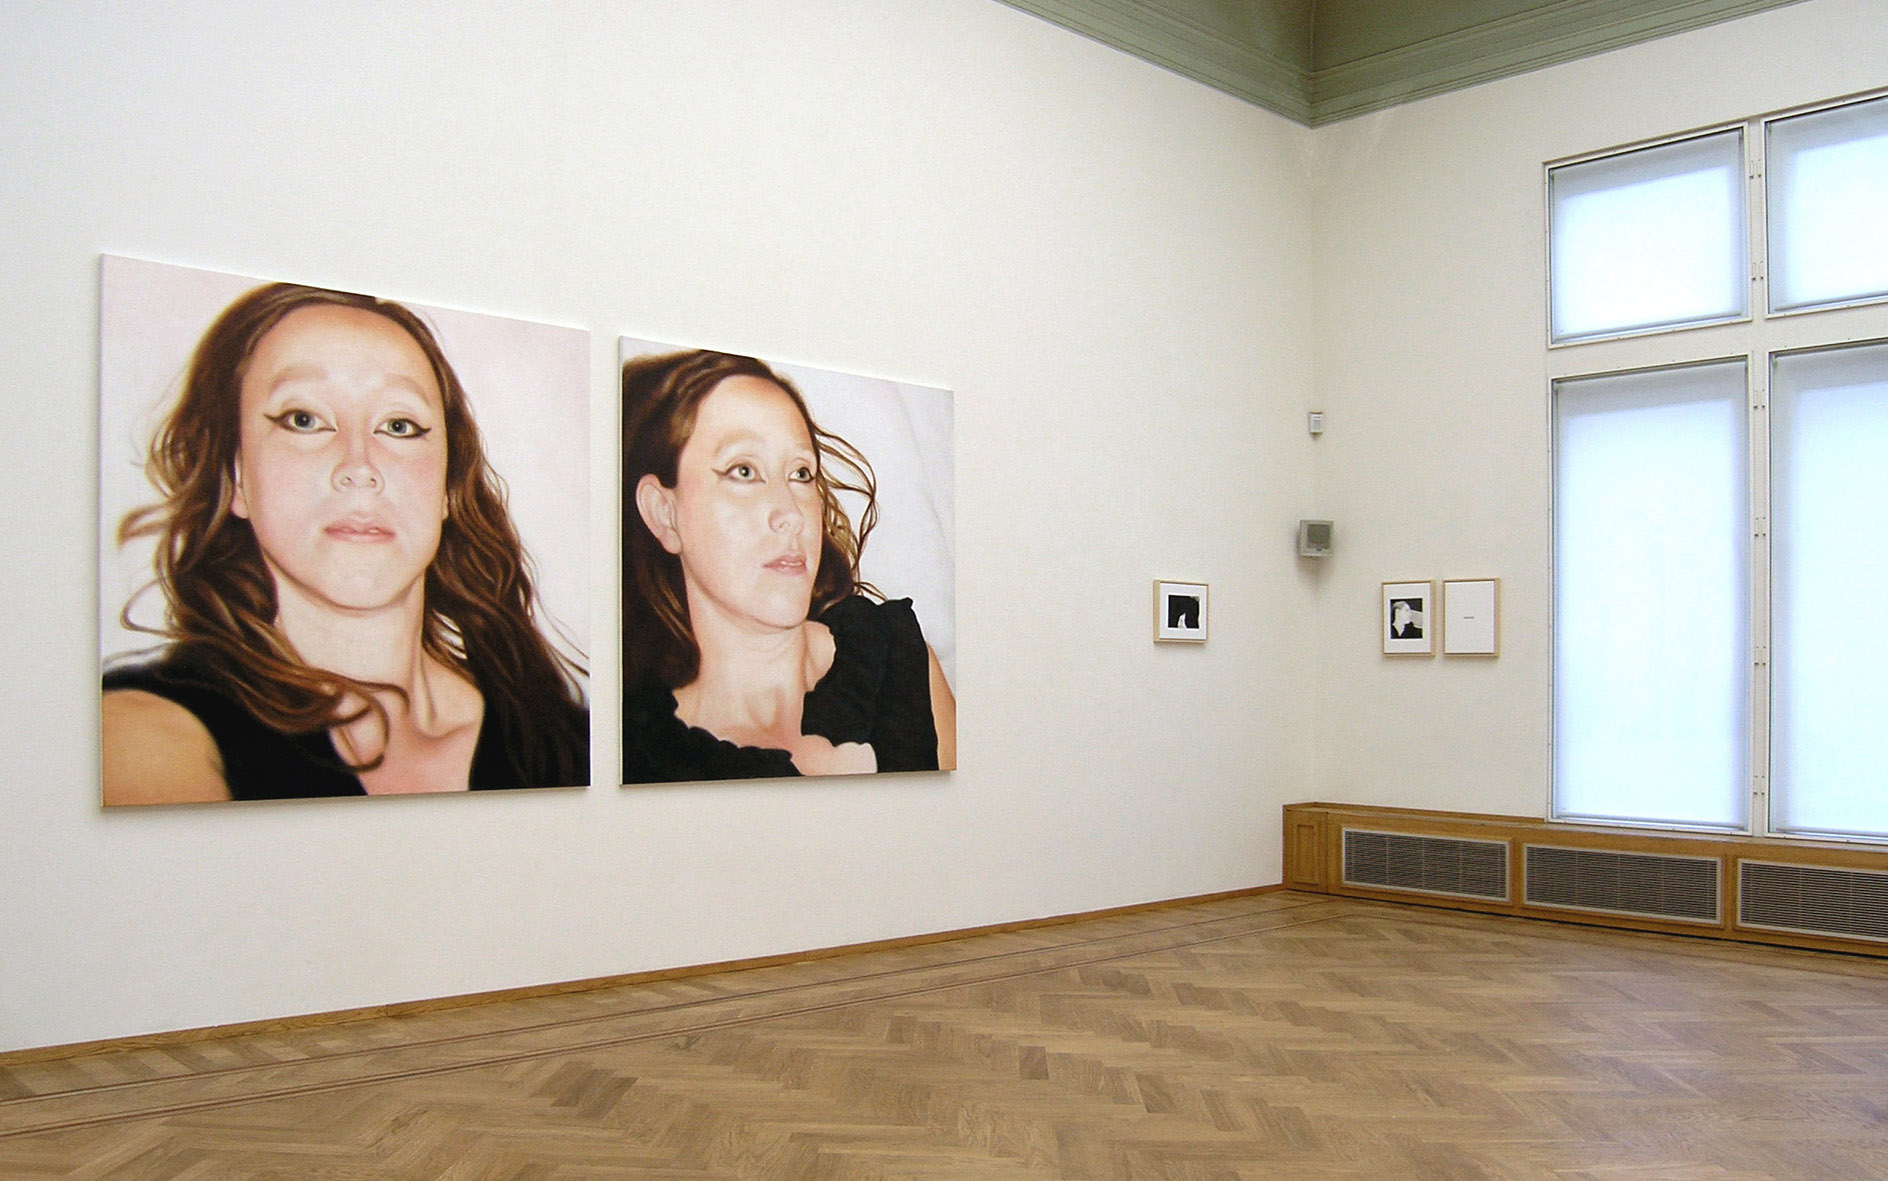 Lique Schoot, Self-portraits 07 08 15 and 07 08 12